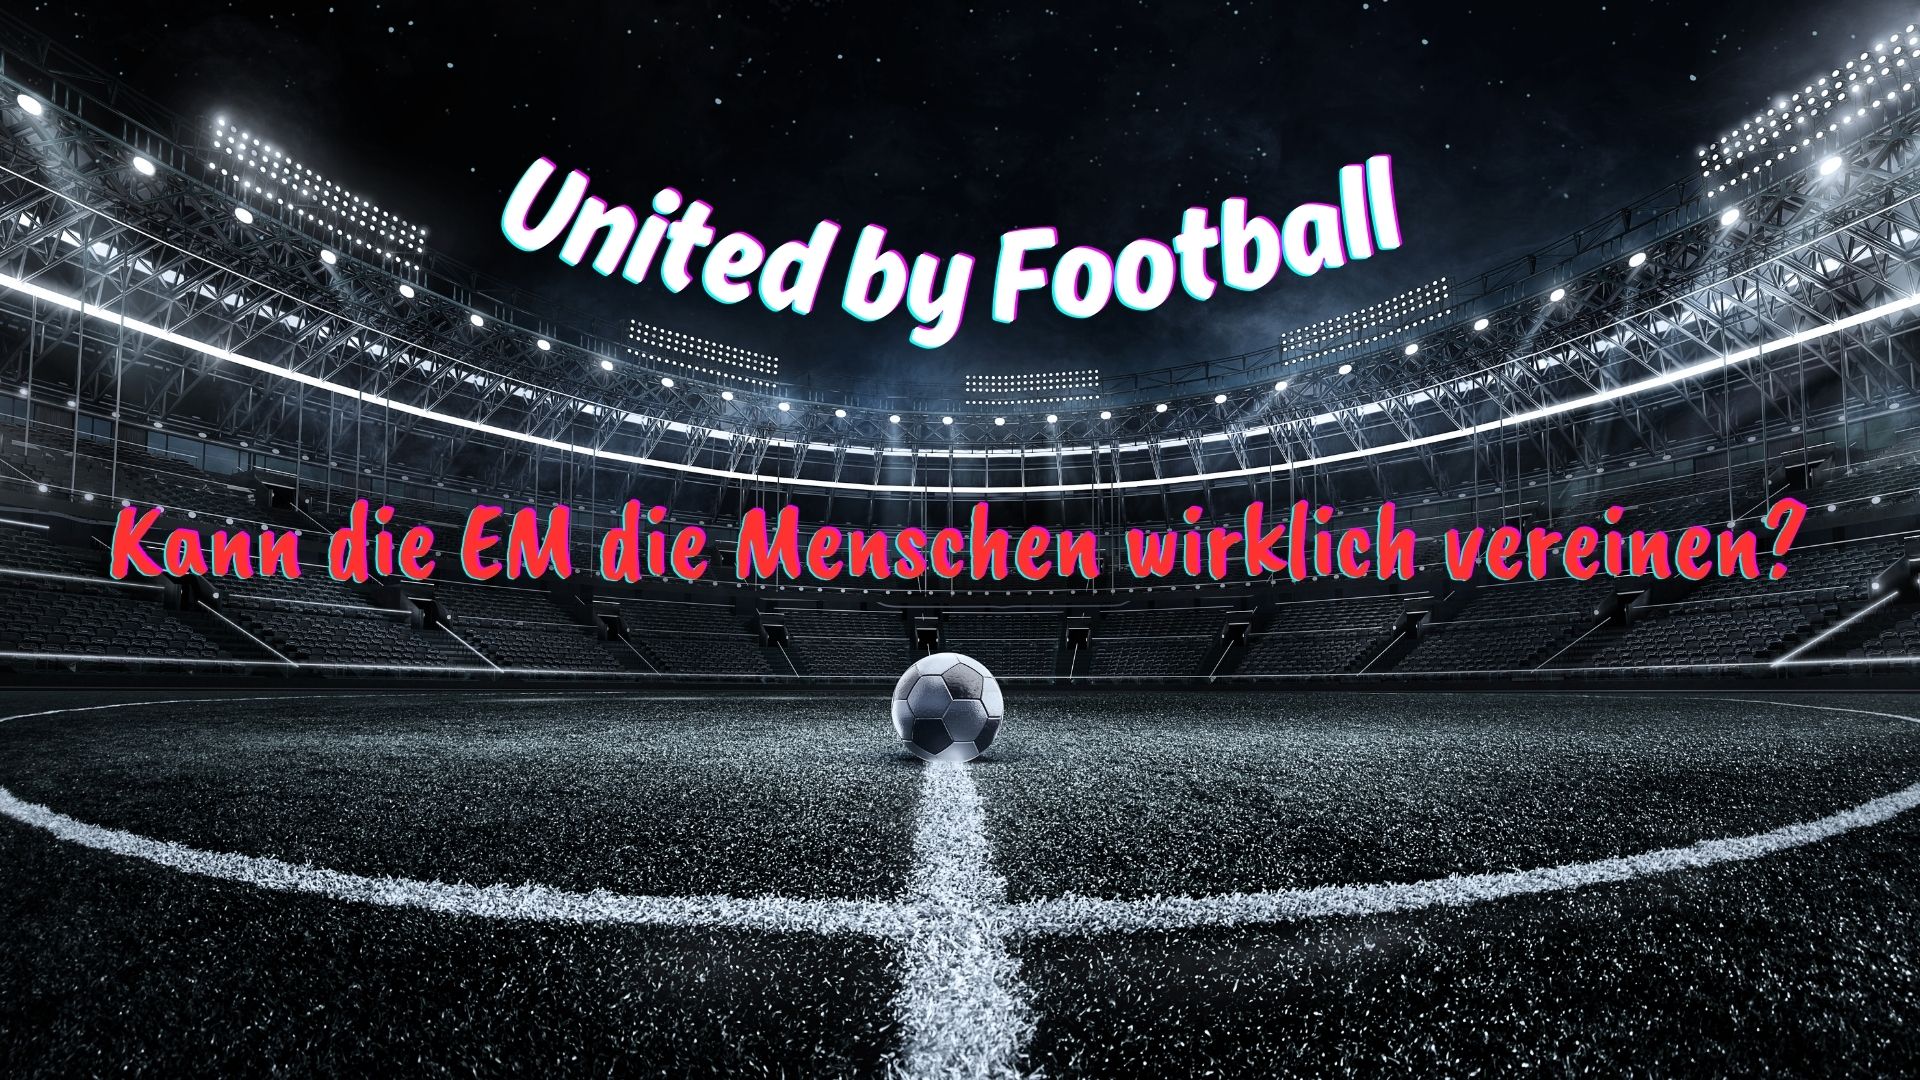 United by Football – Kann die EM die Menschen wirklich vereinen?